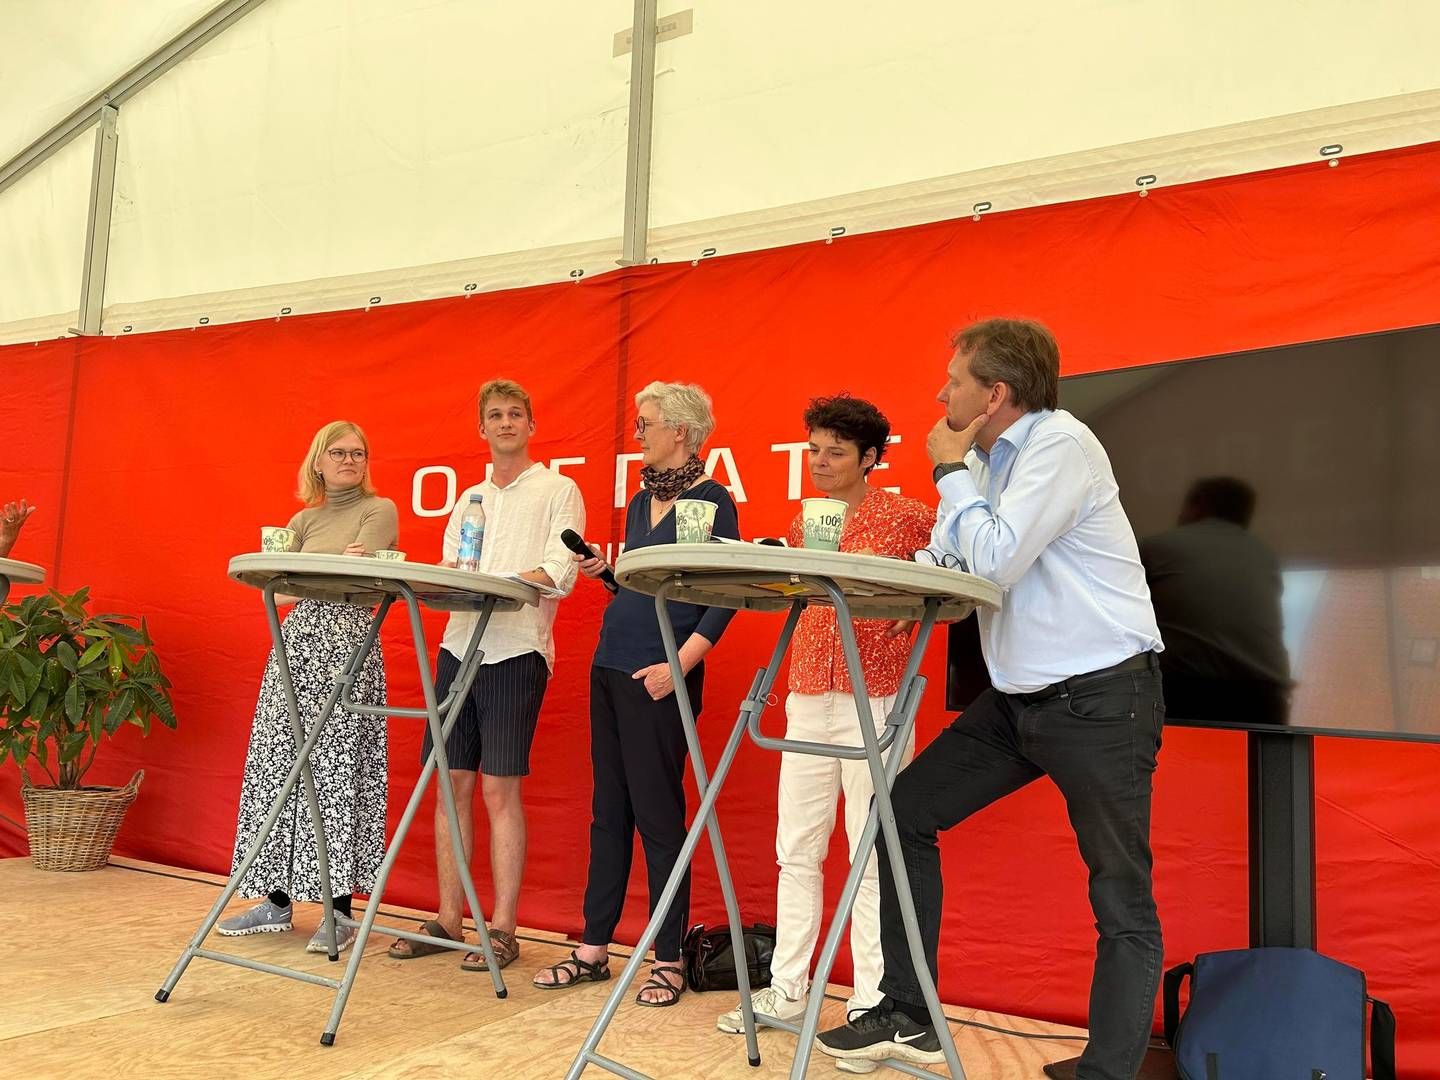 Fra venstre mod højre: Sofie Lippert (SF), William Heide (DGS), Kirsten Jensen, Movia, Anja Philip, Forbrugerrådet Tænk, Peter Juel Jensen (V). | Foto: Foto: Mads Oddershede